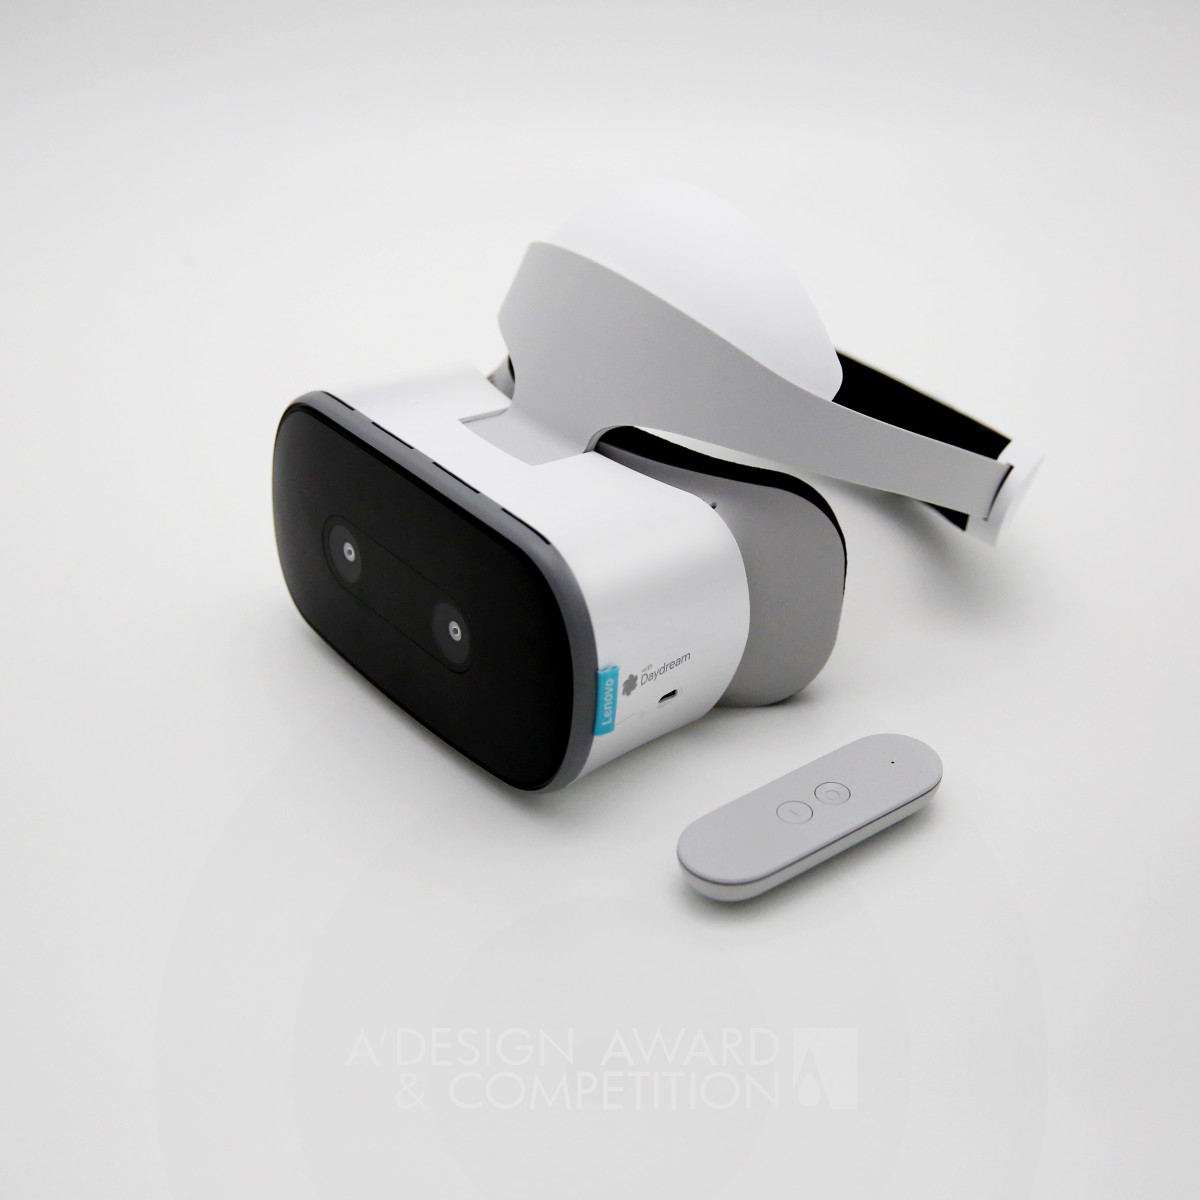 Lenovo Design Group VR Headset